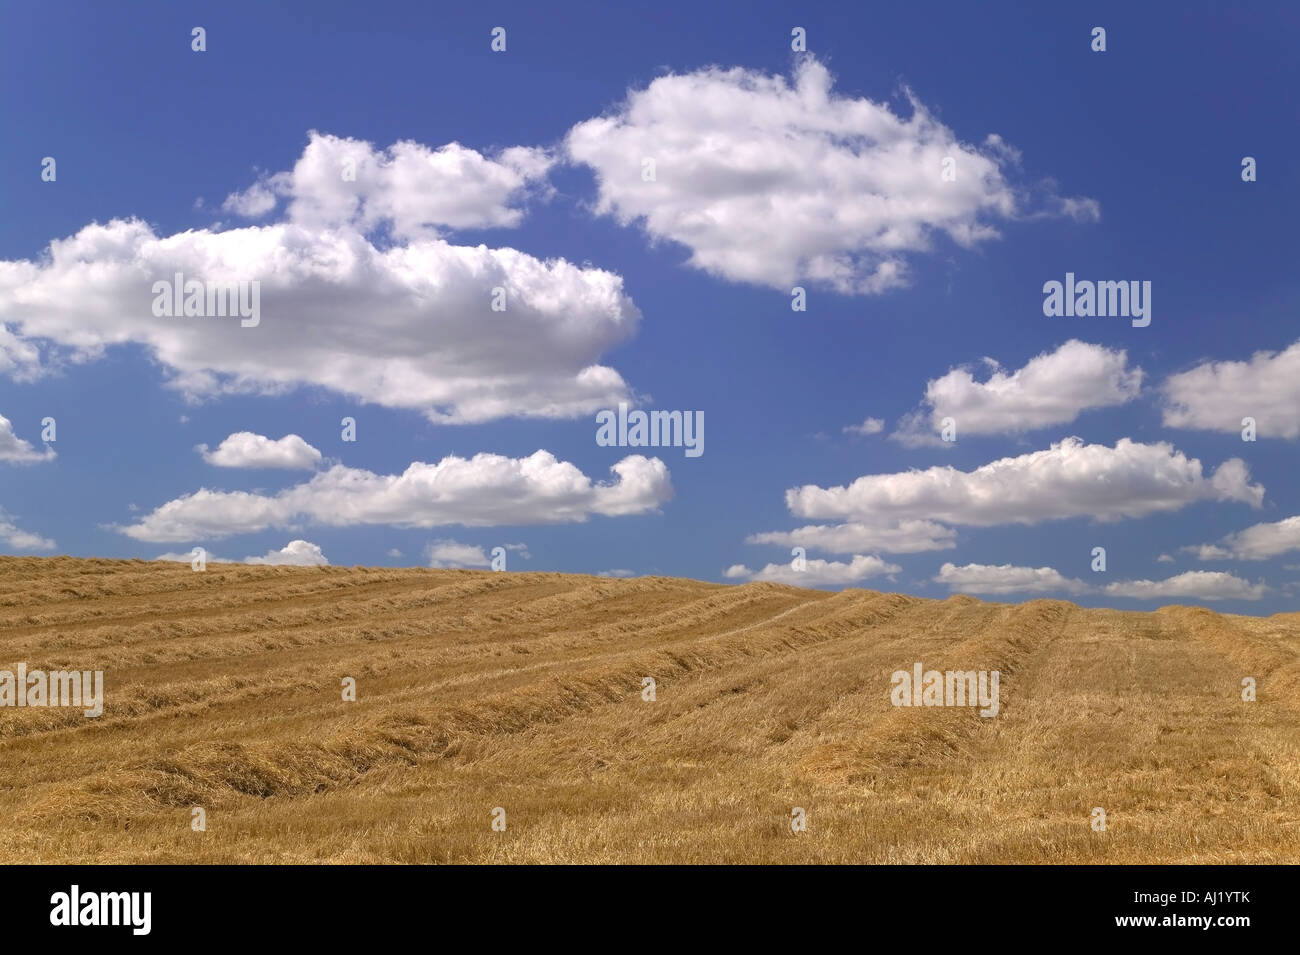 Goldenes Feld von Heu vor einem schönen blauen bewölkten Himmel Stockfoto